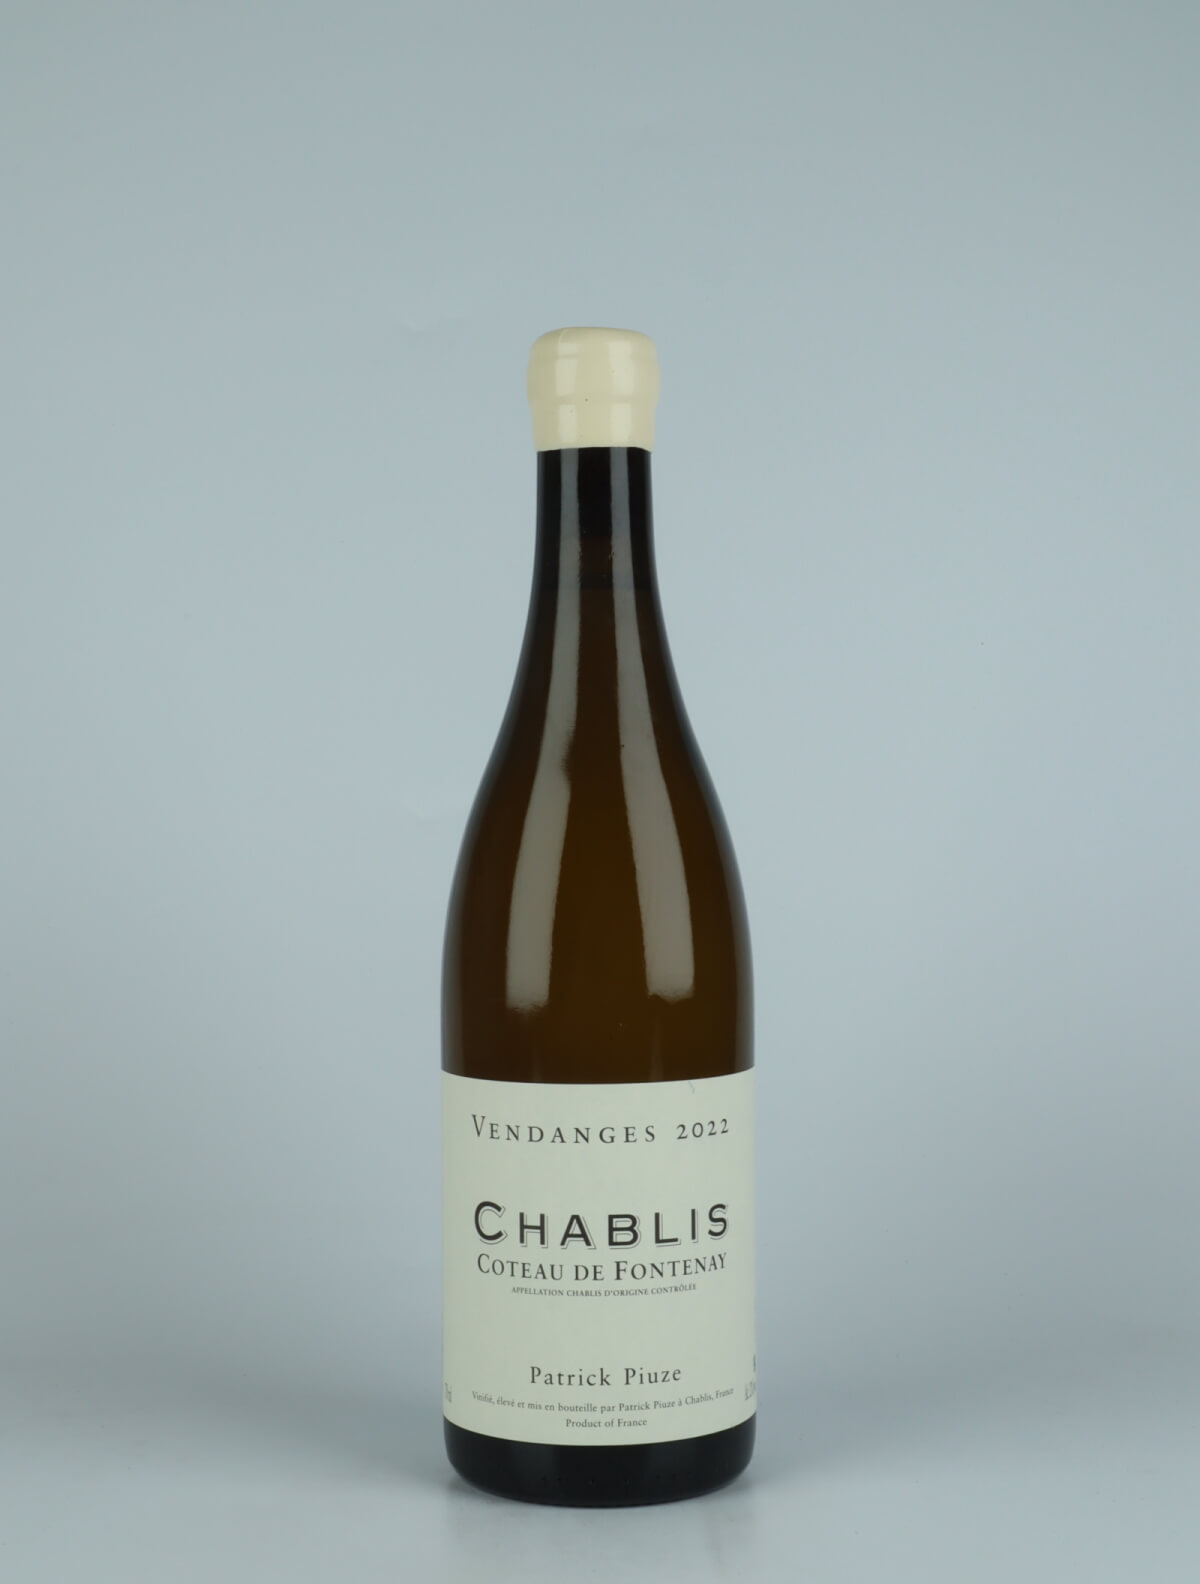 En flaske 2022 Chablis - Coteau de Fontenay Hvidvin fra Patrick Piuze, Bourgogne i Frankrig